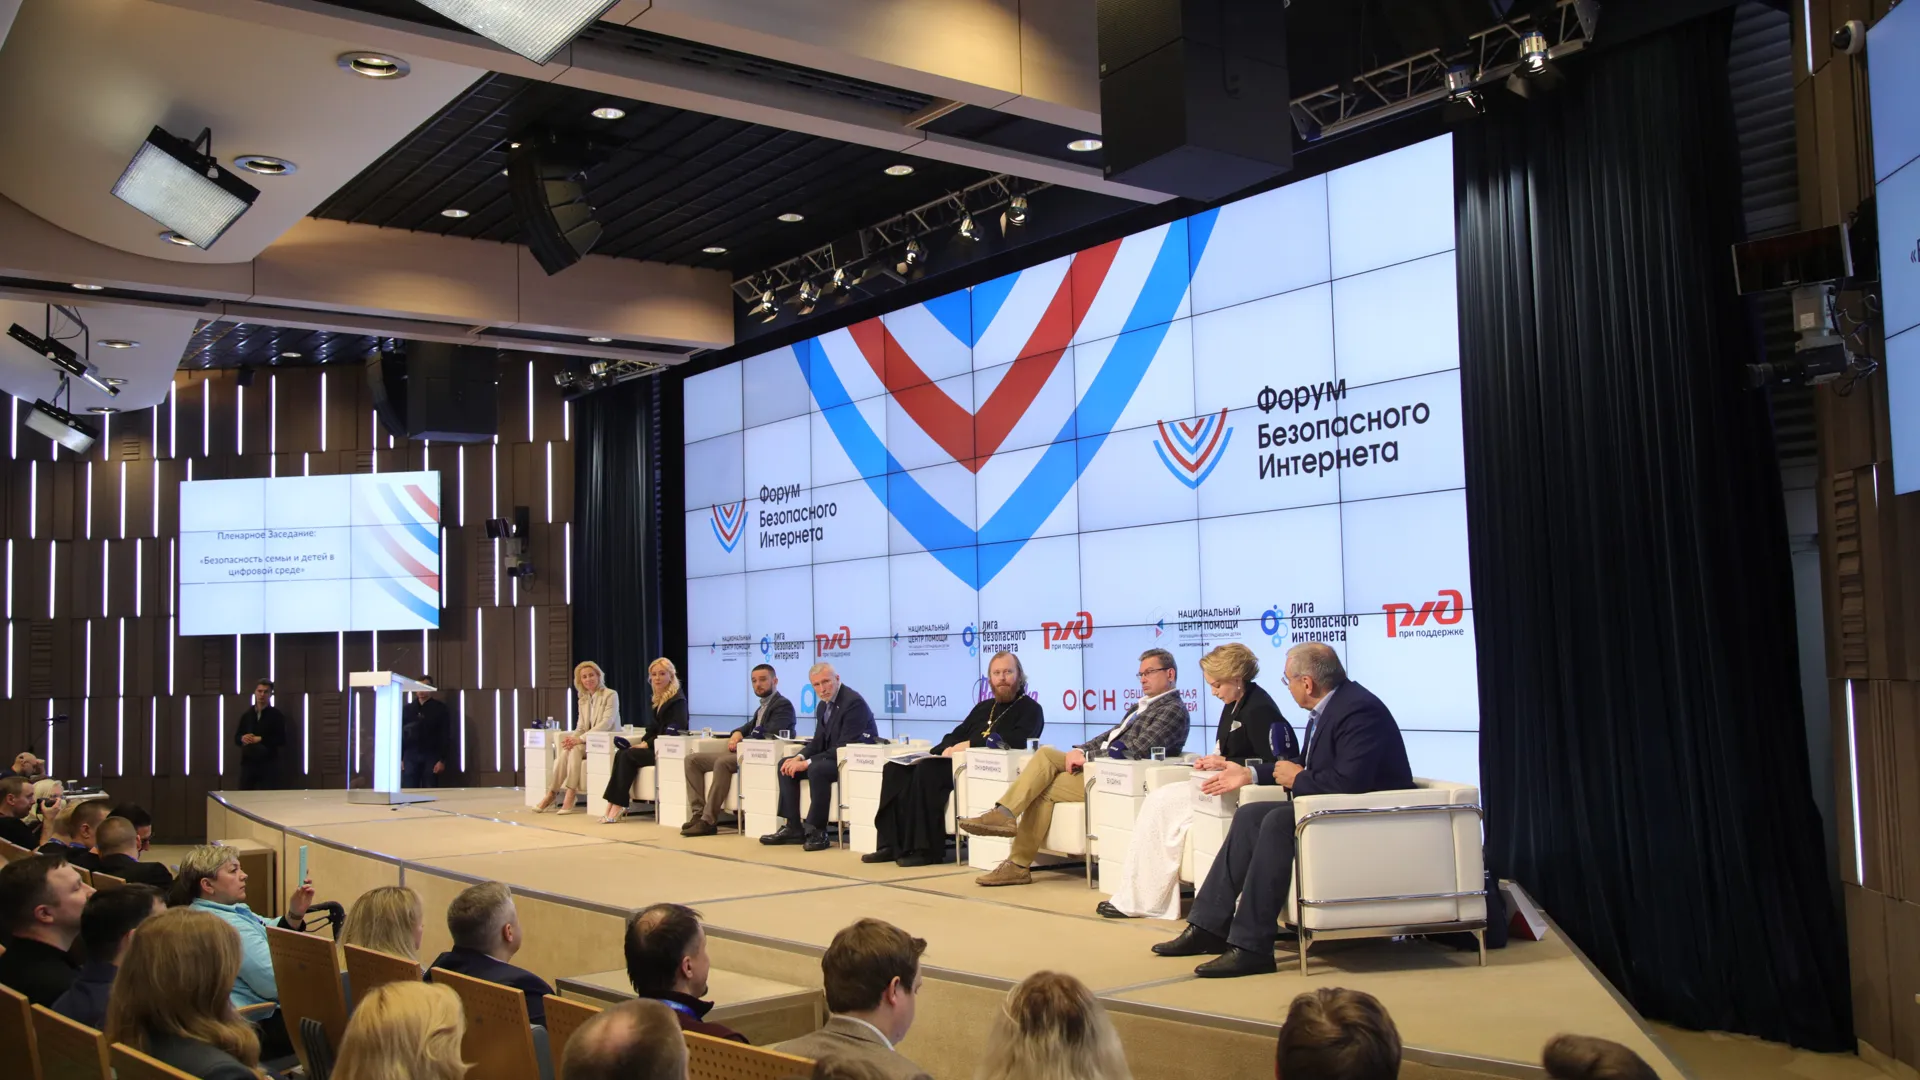 XIII Форум безопасного интернета прошел в Москве